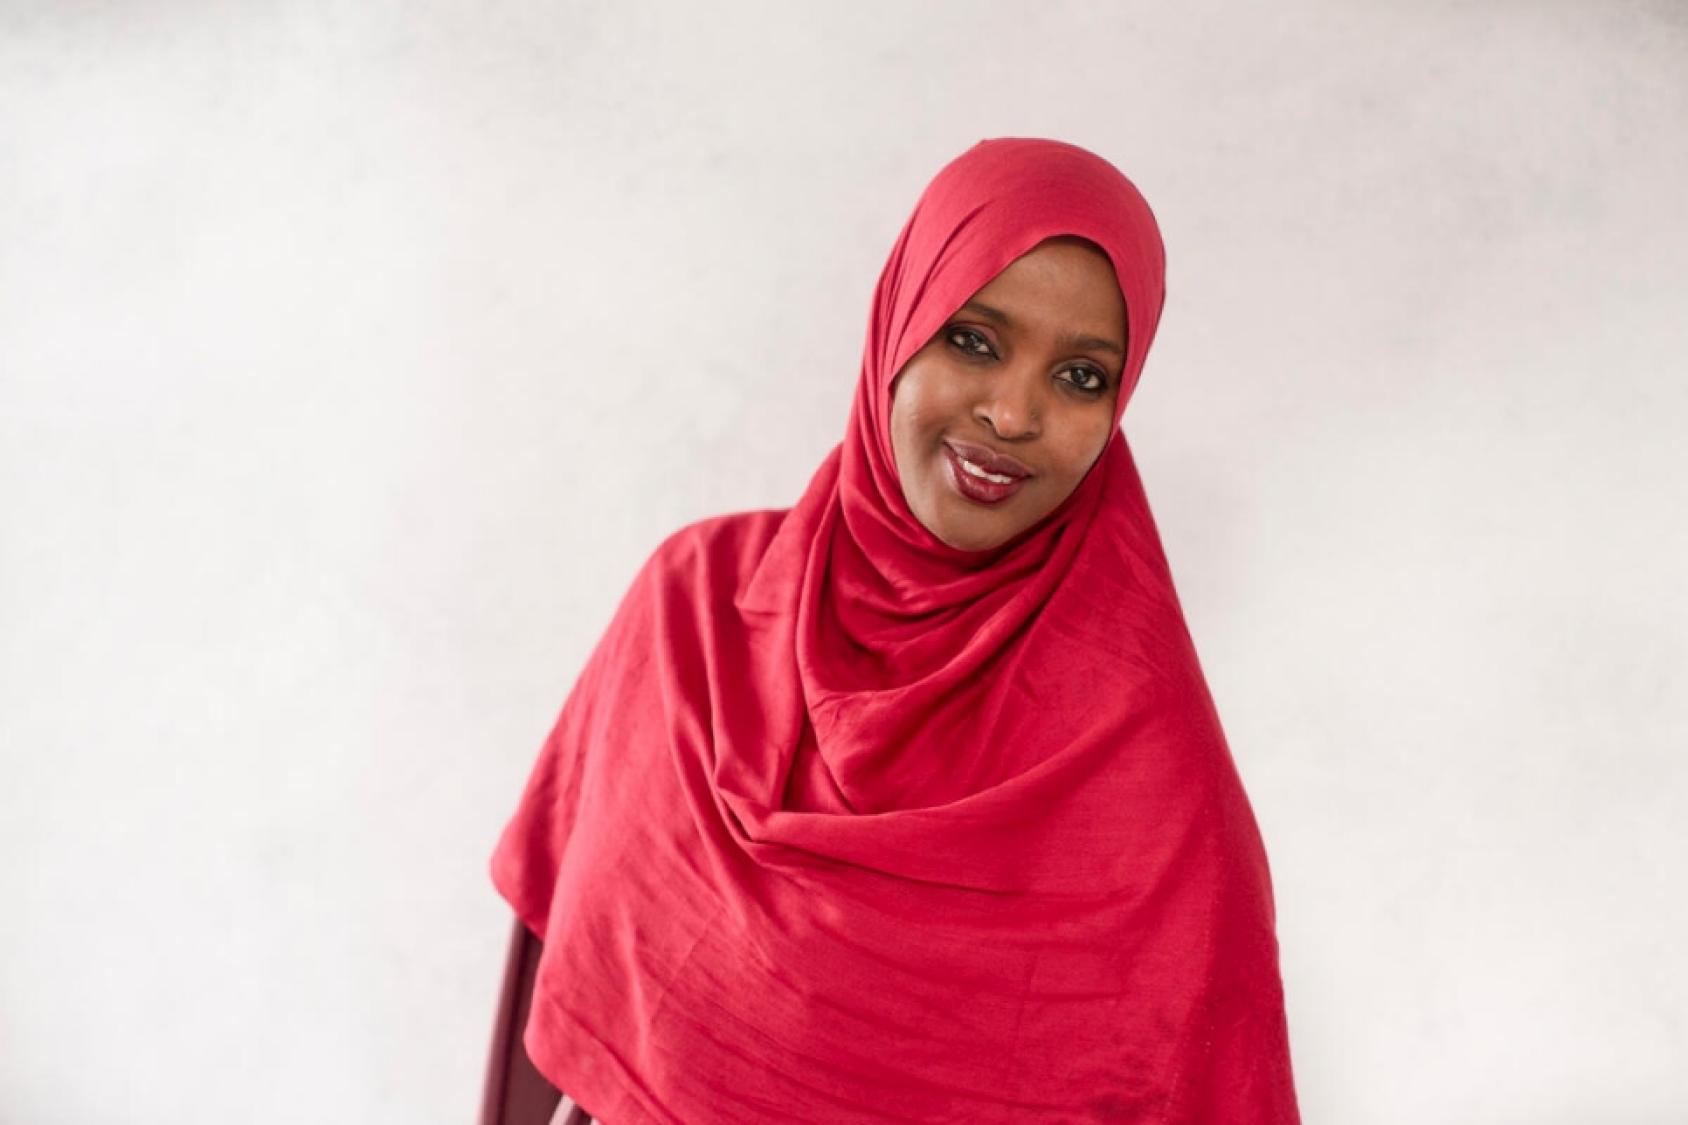 Una mujer sonriente con un hijab rojo mira directamente a la cámara.